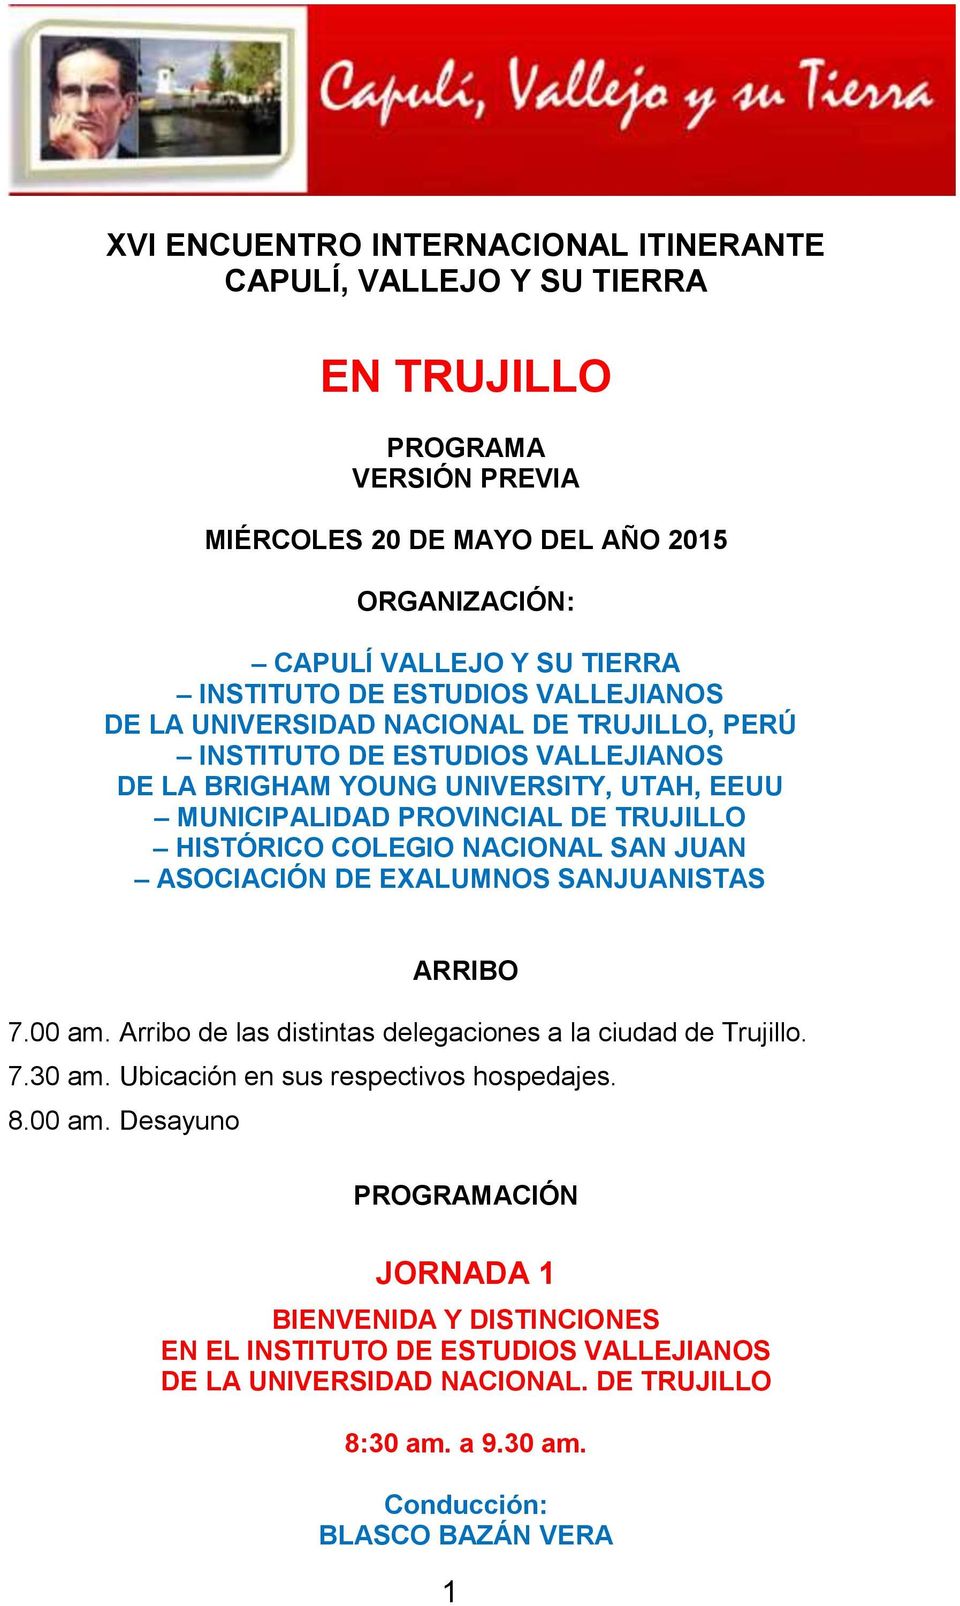 COLEGIO NACIONAL SAN JUAN ASOCIACIÓN DE EXALUMNOS SANJUANISTAS ARRIBO 7.00 am. Arribo de las distintas delegaciones a la ciudad de Trujillo. 7.30 am. Ubicación en sus respectivos hospedajes. 8.